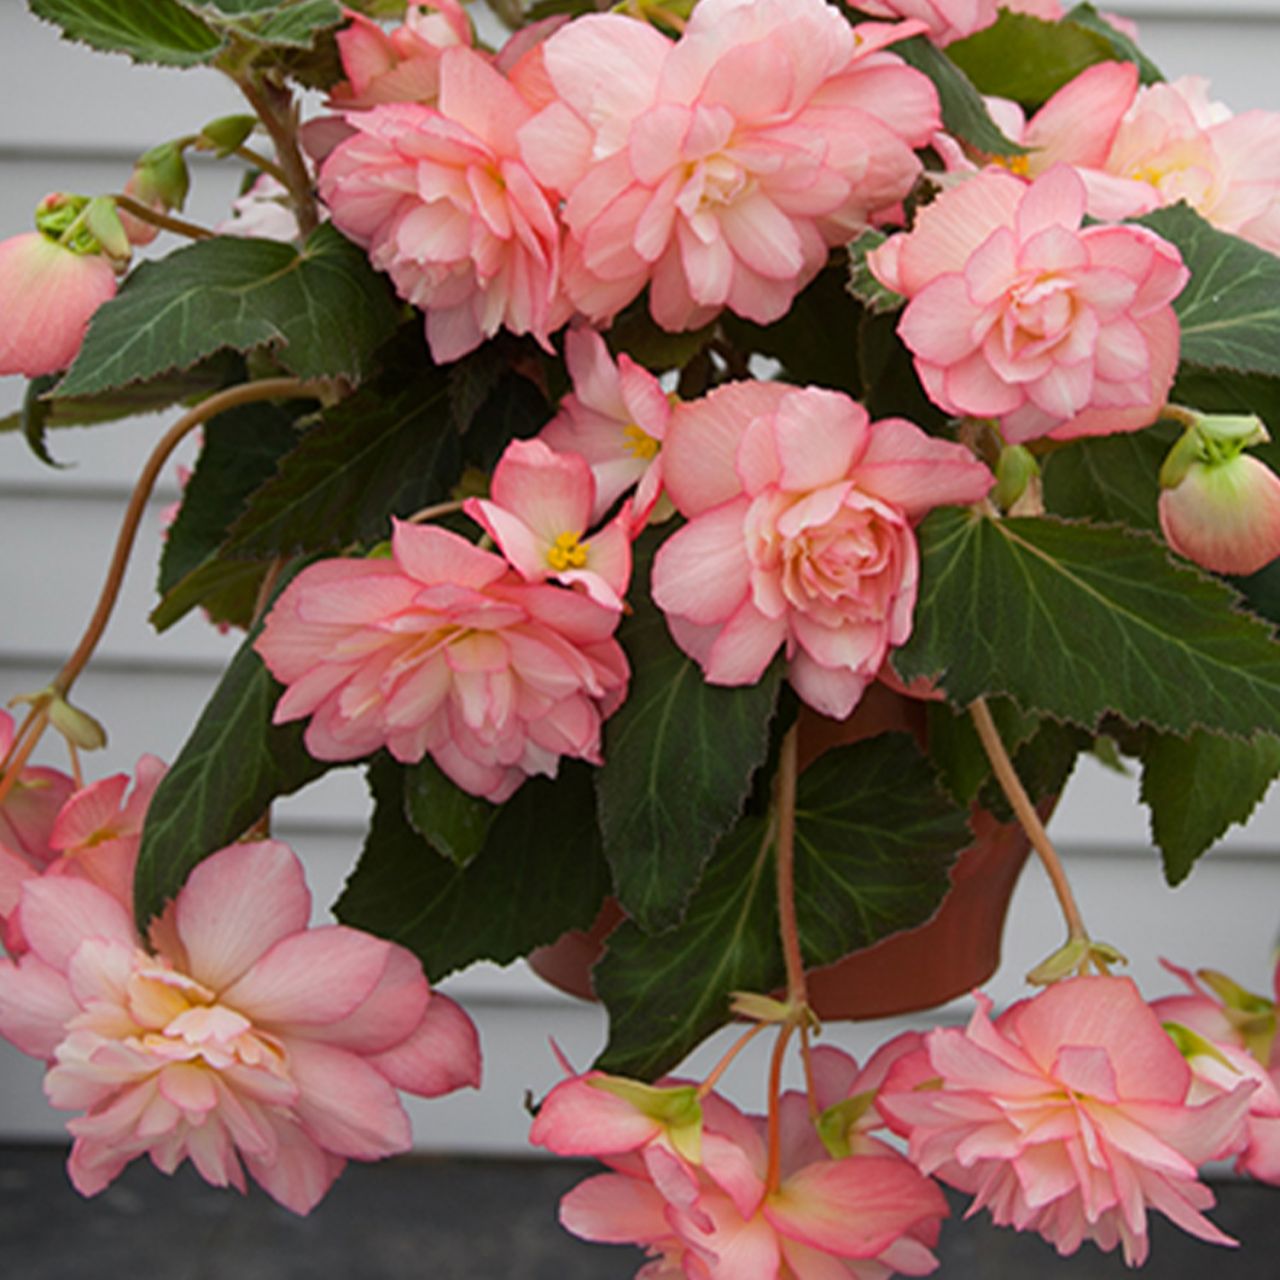 Kategorie <b>Frühlings-Blumenzwiebeln </b> - Kaskadenbegonie 'Florance', 2 Stück - Begonia cascade 'Florance'